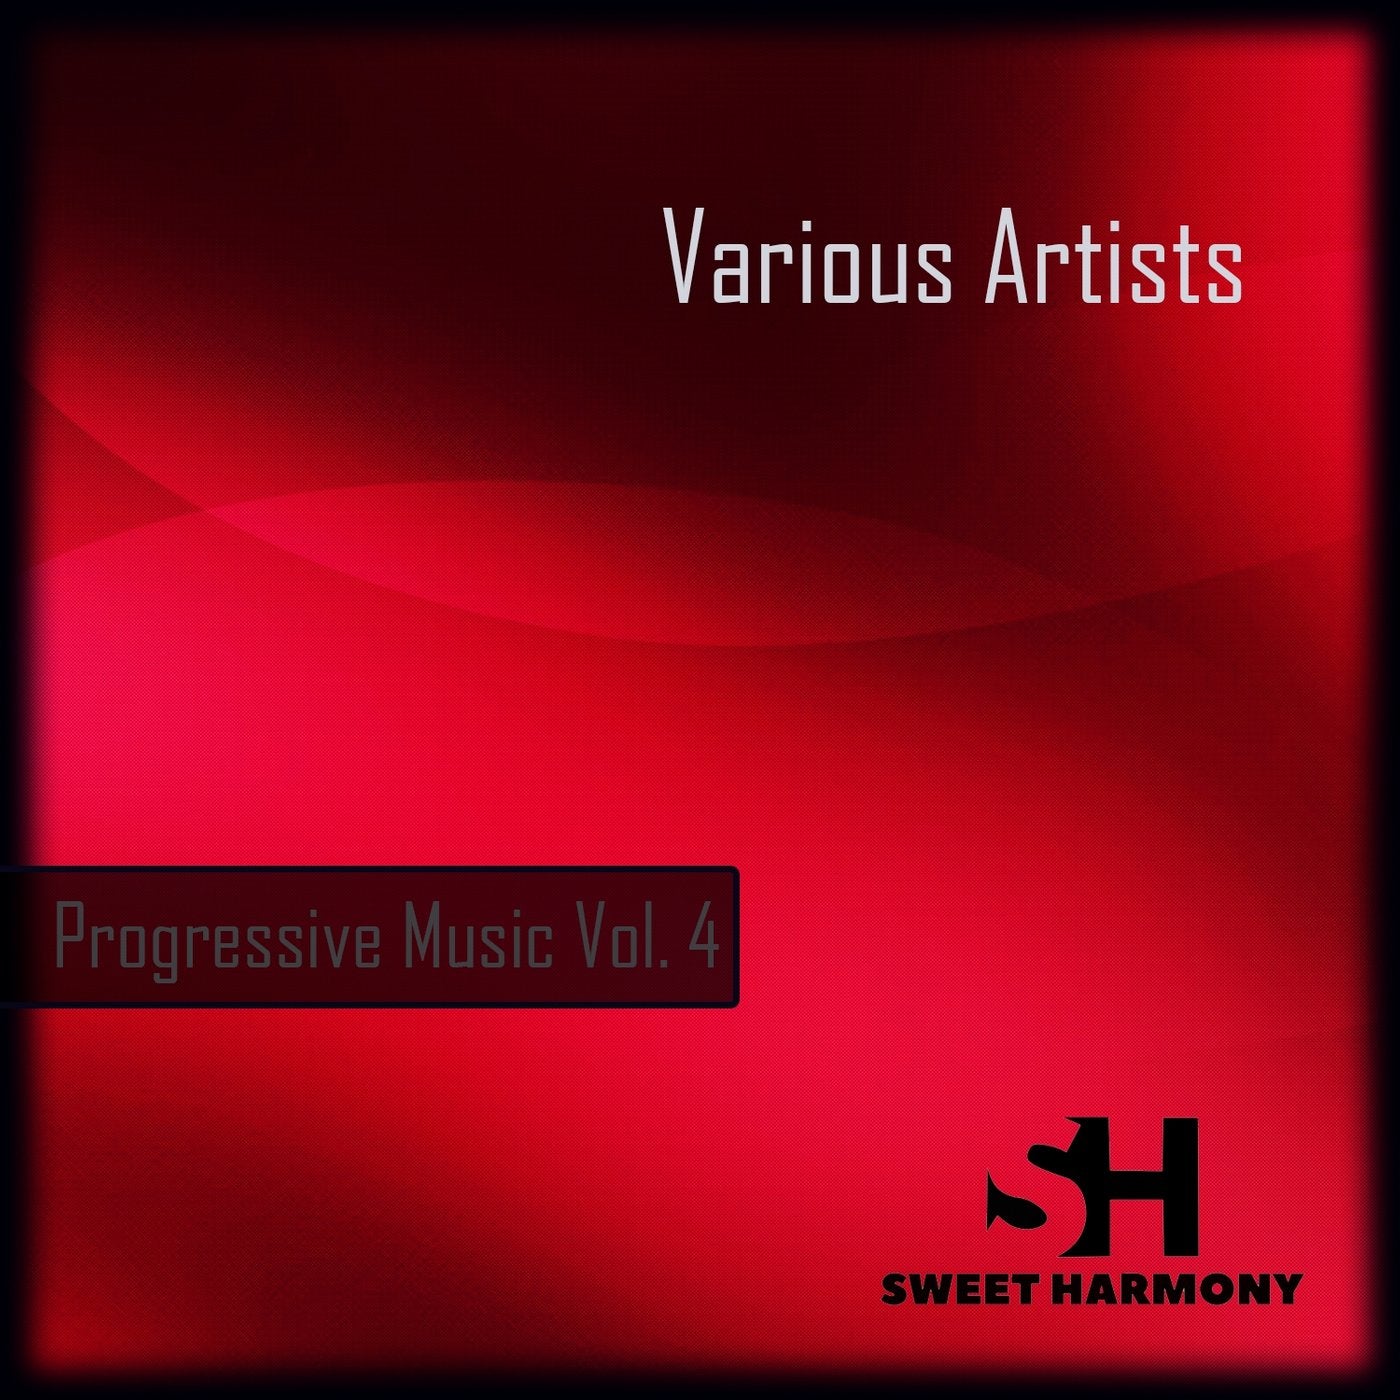 Progressive Music, Vol. 4